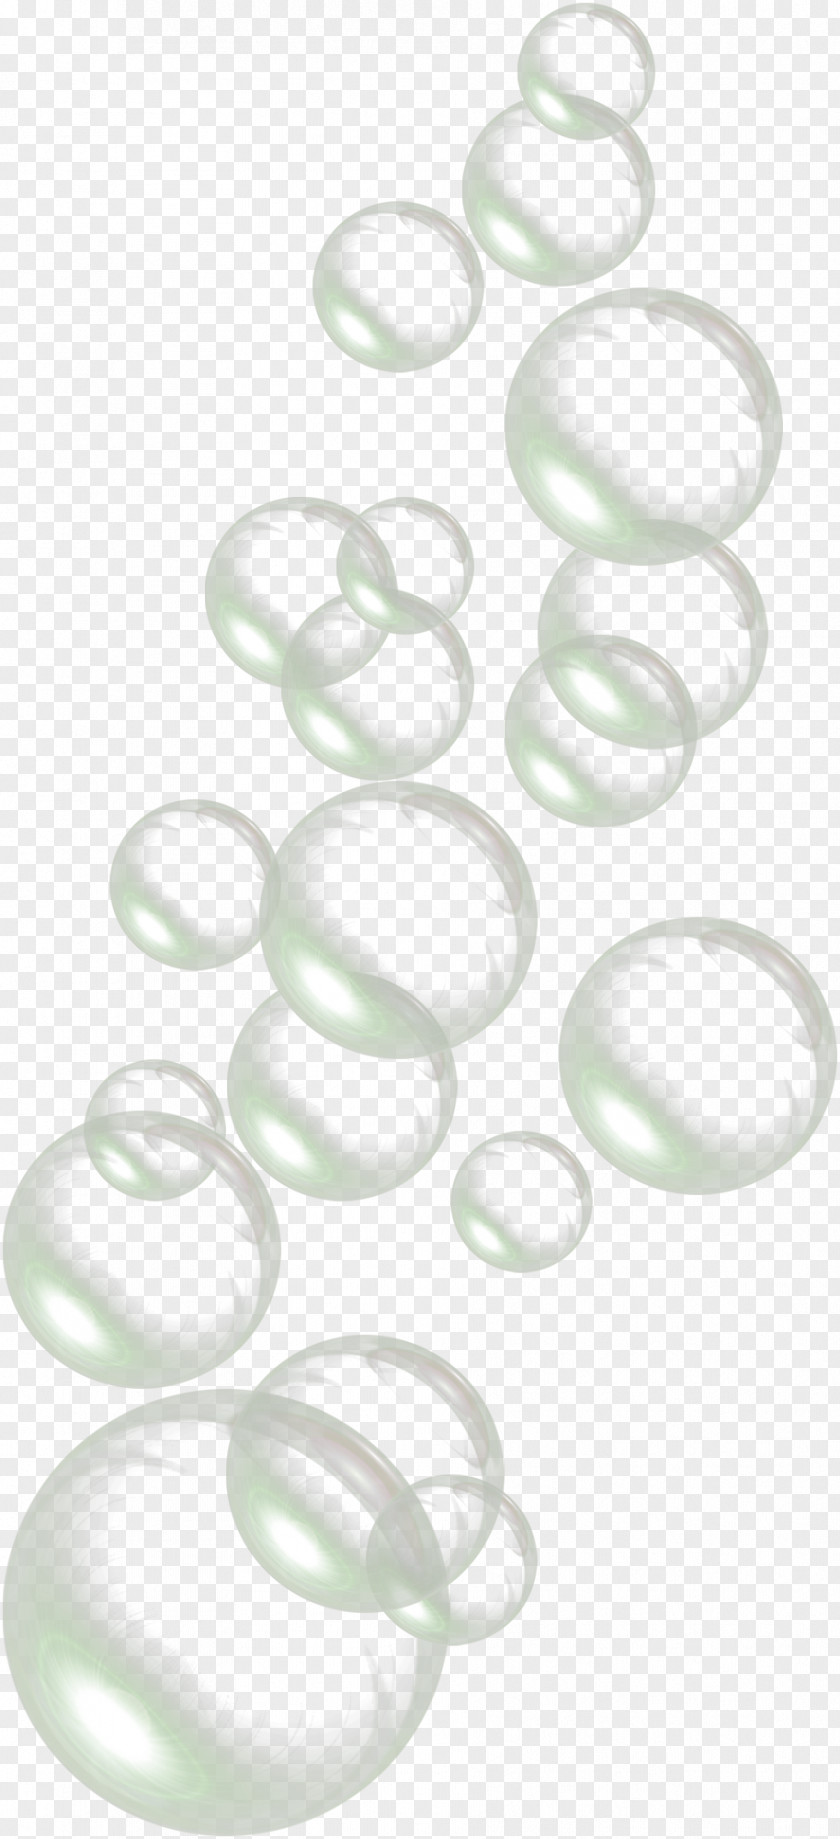 Drops Of Water Bubbles Clip Art PNG